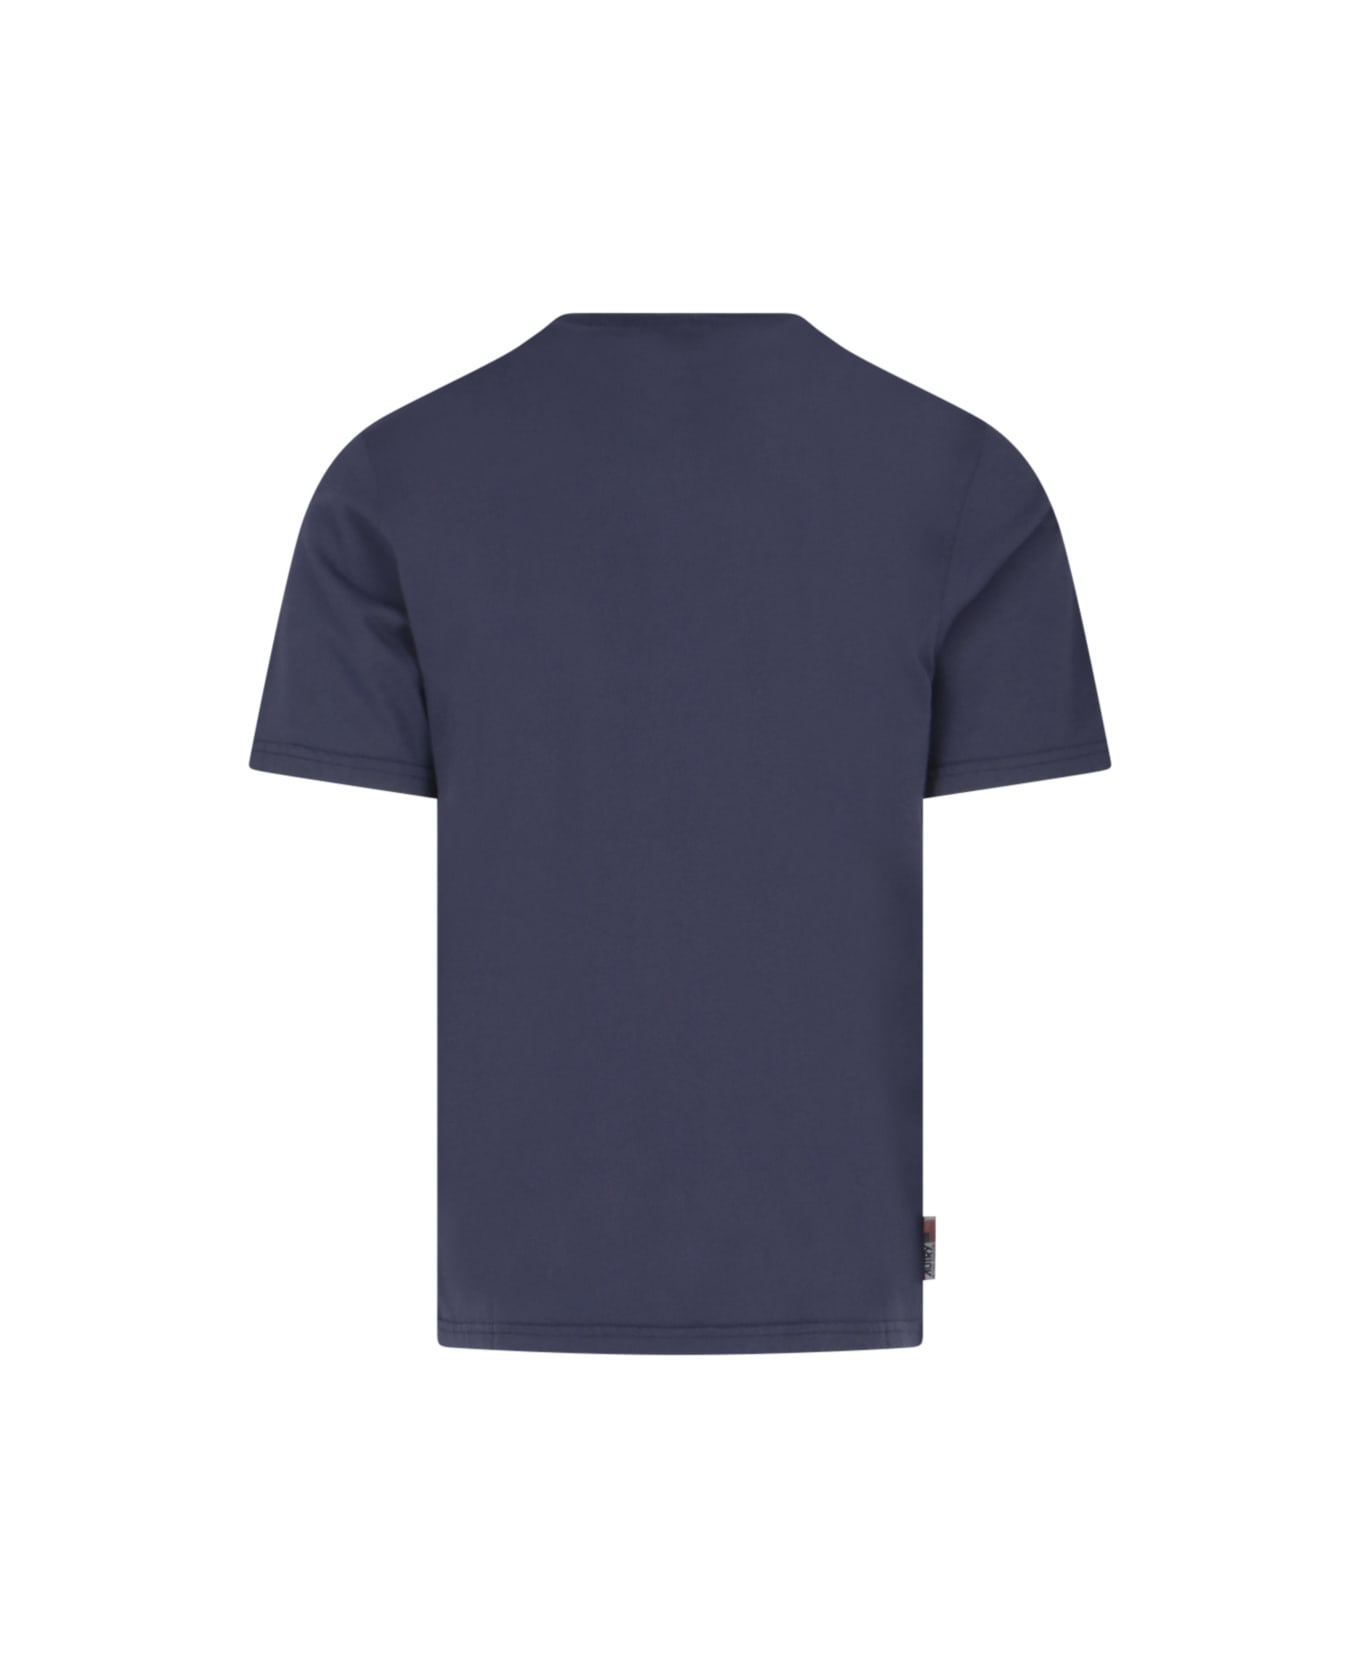 Autry Cotton Crew-neck T-shirt - Blu navy シャツ